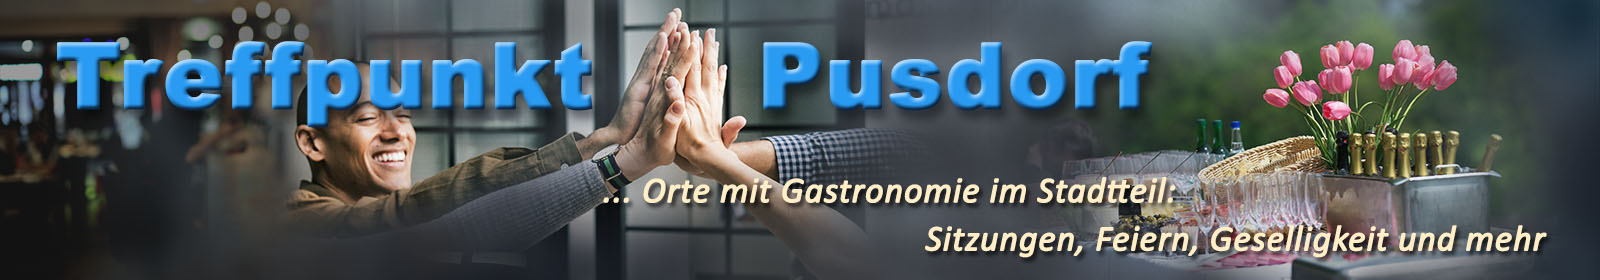 pusdorf.info – Café FillUp